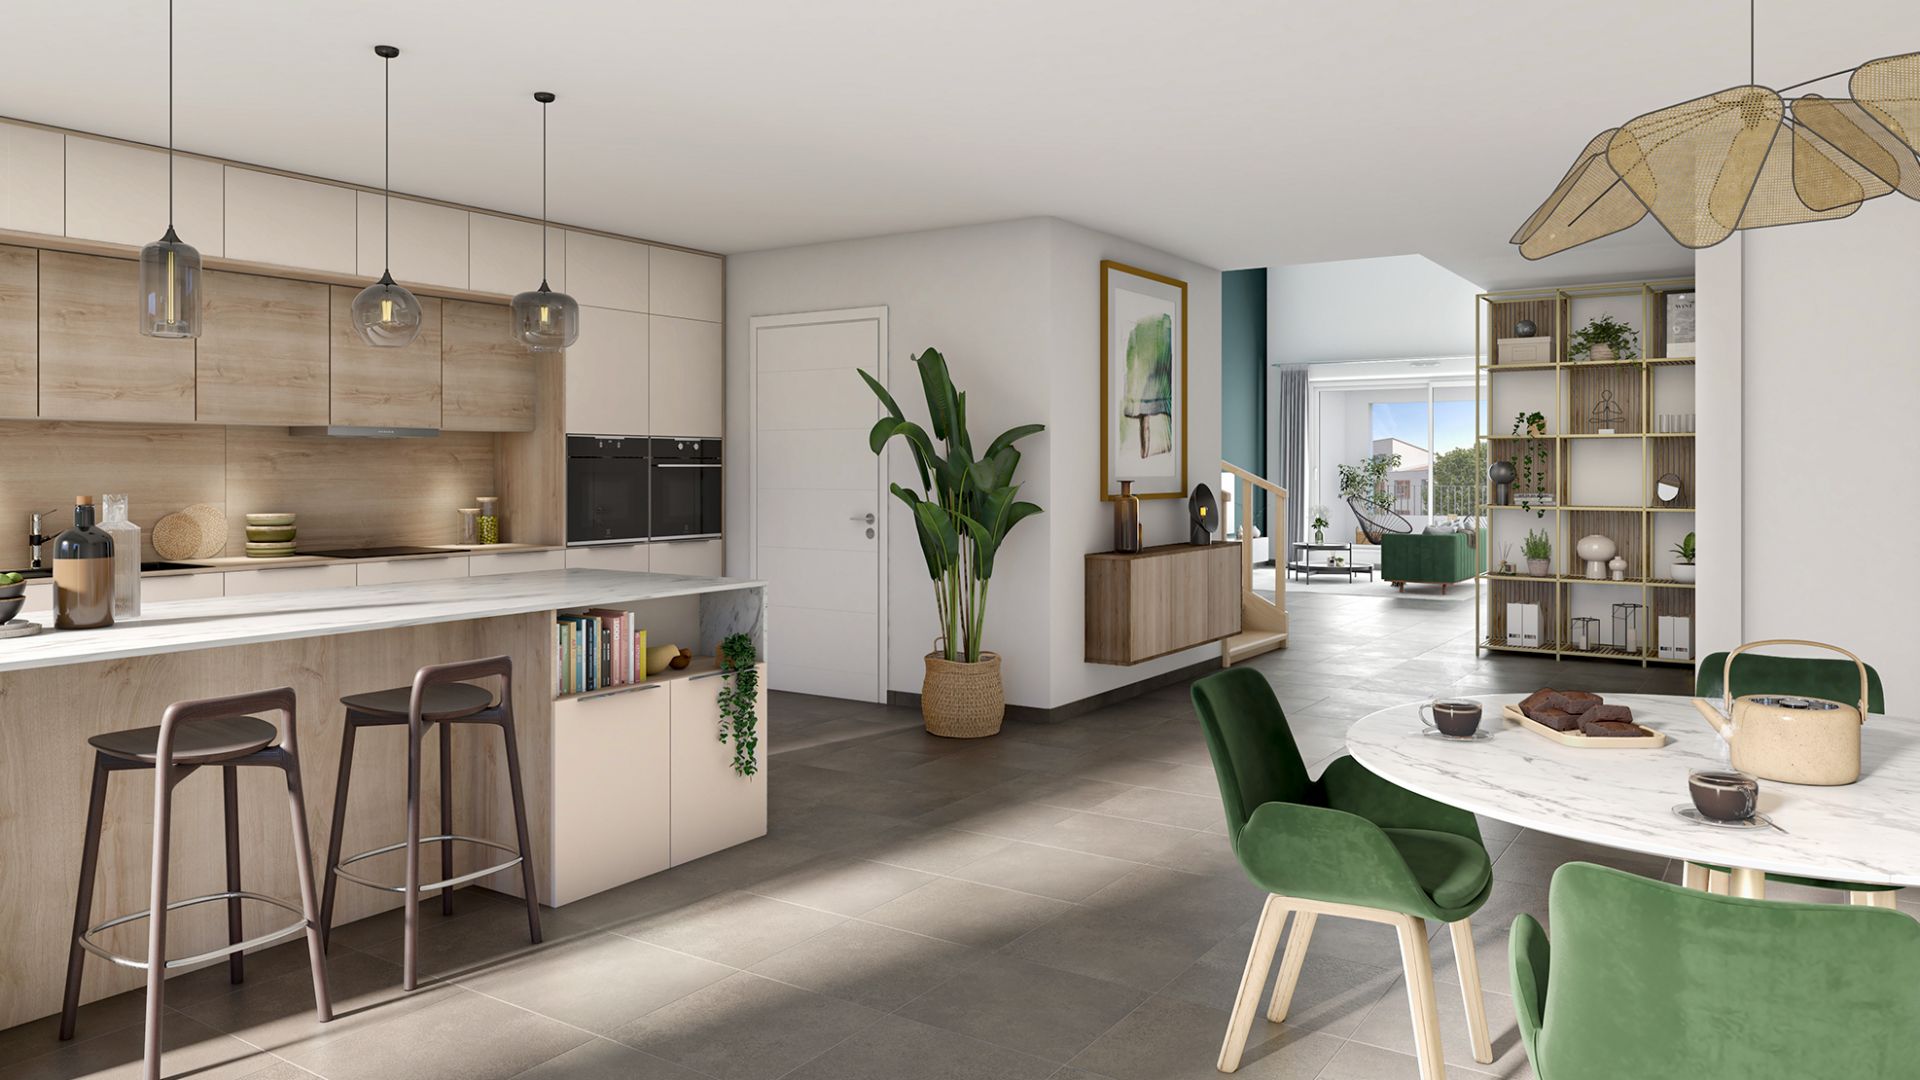 Greencity immobilier - achat appartements neufs du T1 au T4Duplex - Résidence  LE BELLINI - LE GARIBALDI - 31200 Toulouse  